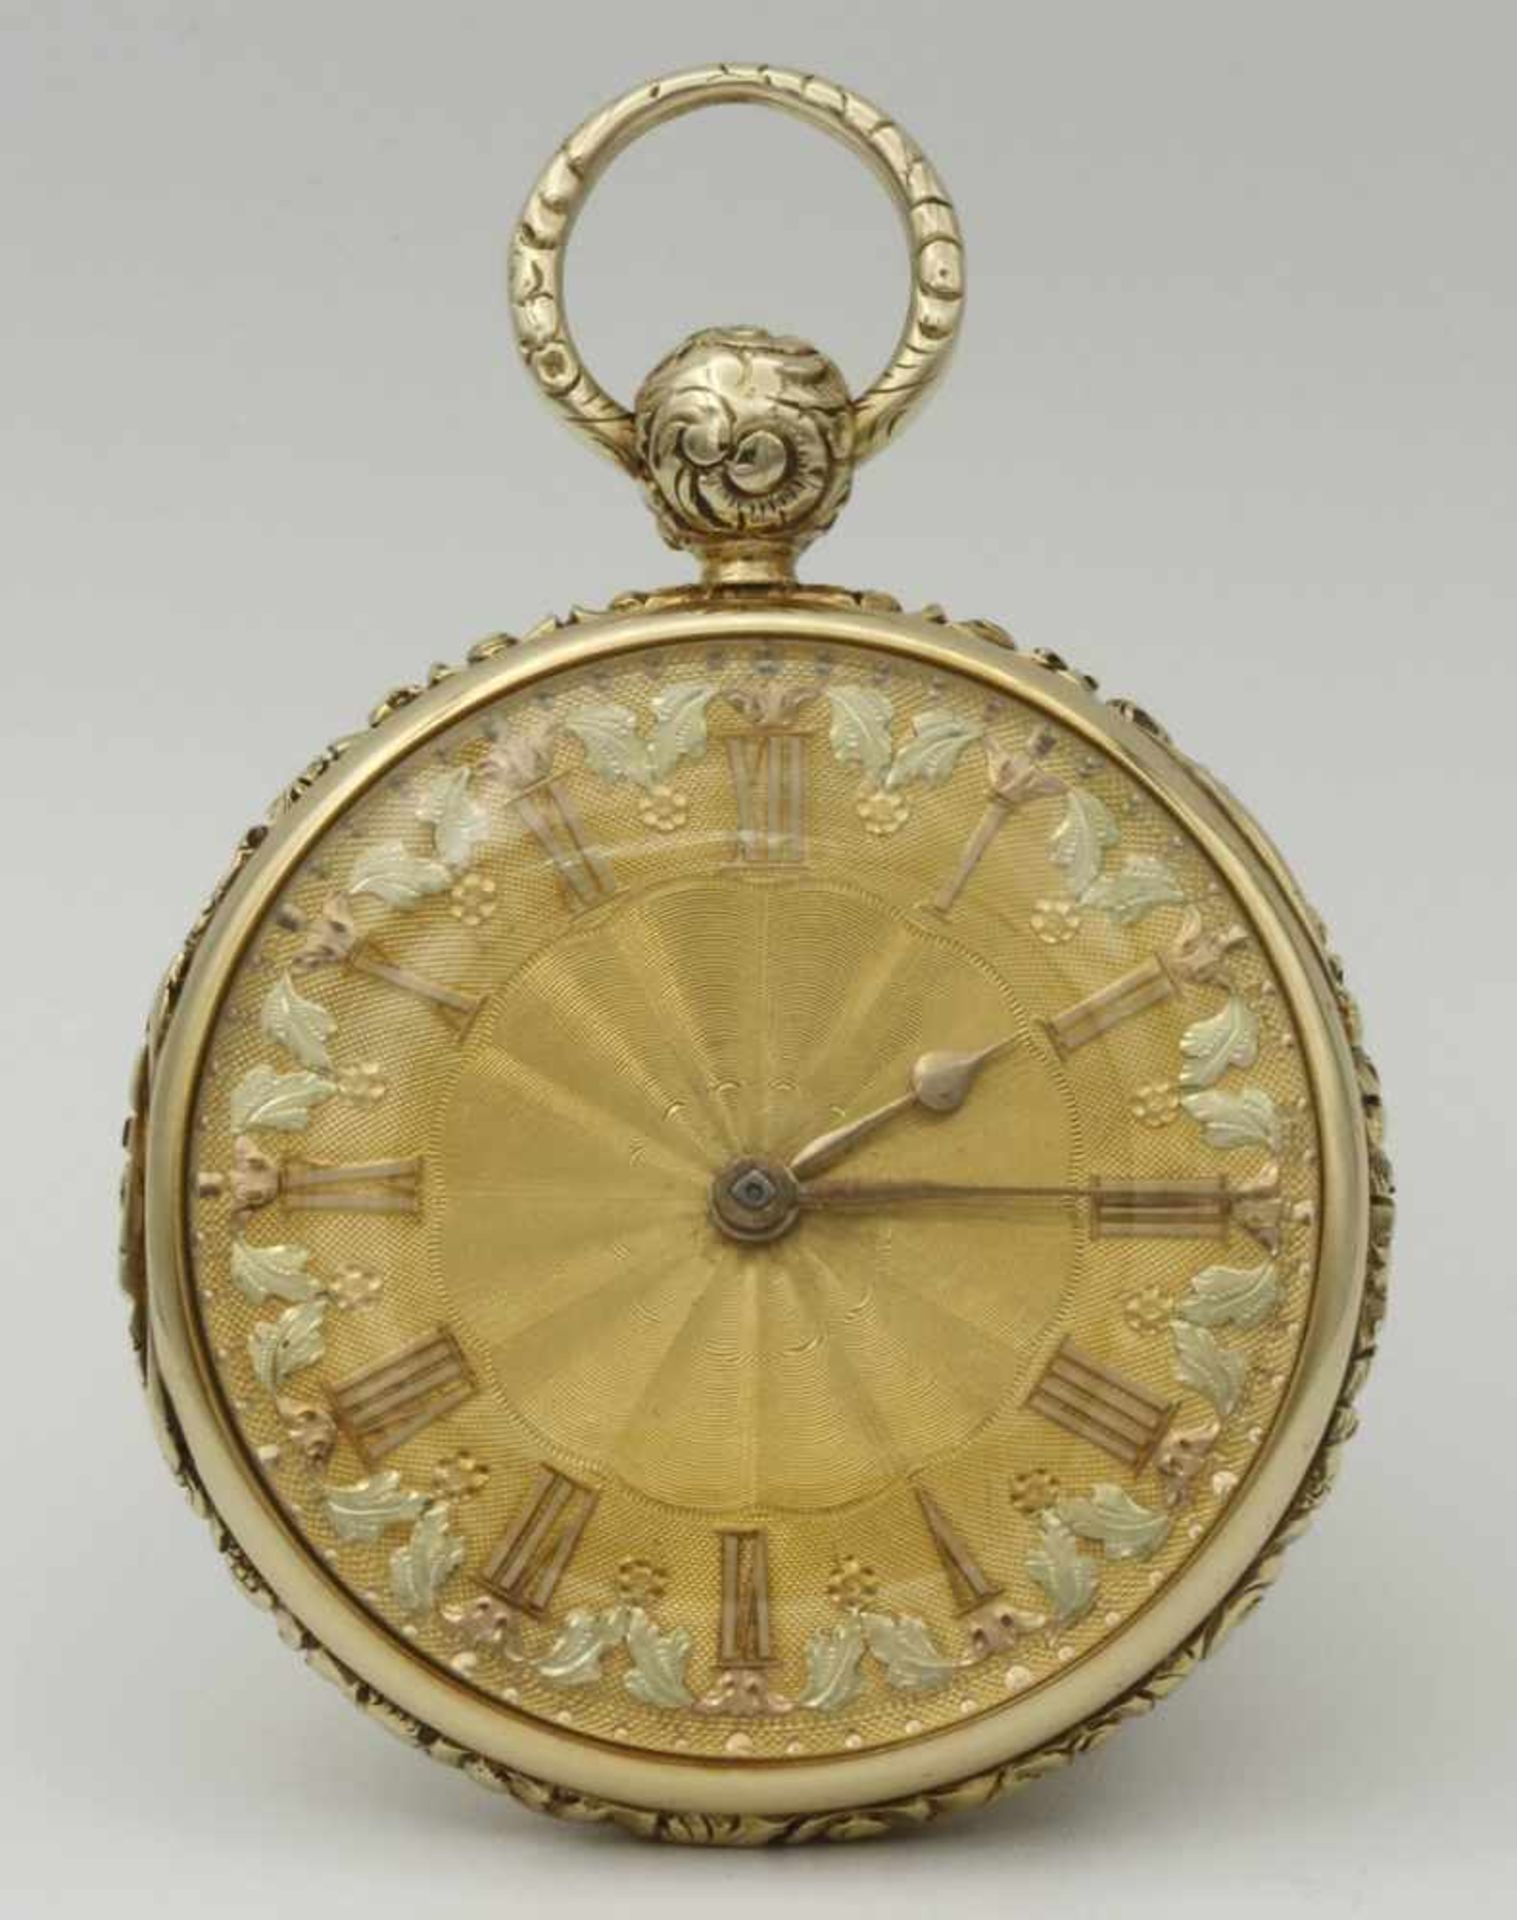 Detached Lever reich verziere goldene Herrentaschenuhr, um 1830 - Bild 2 aus 6